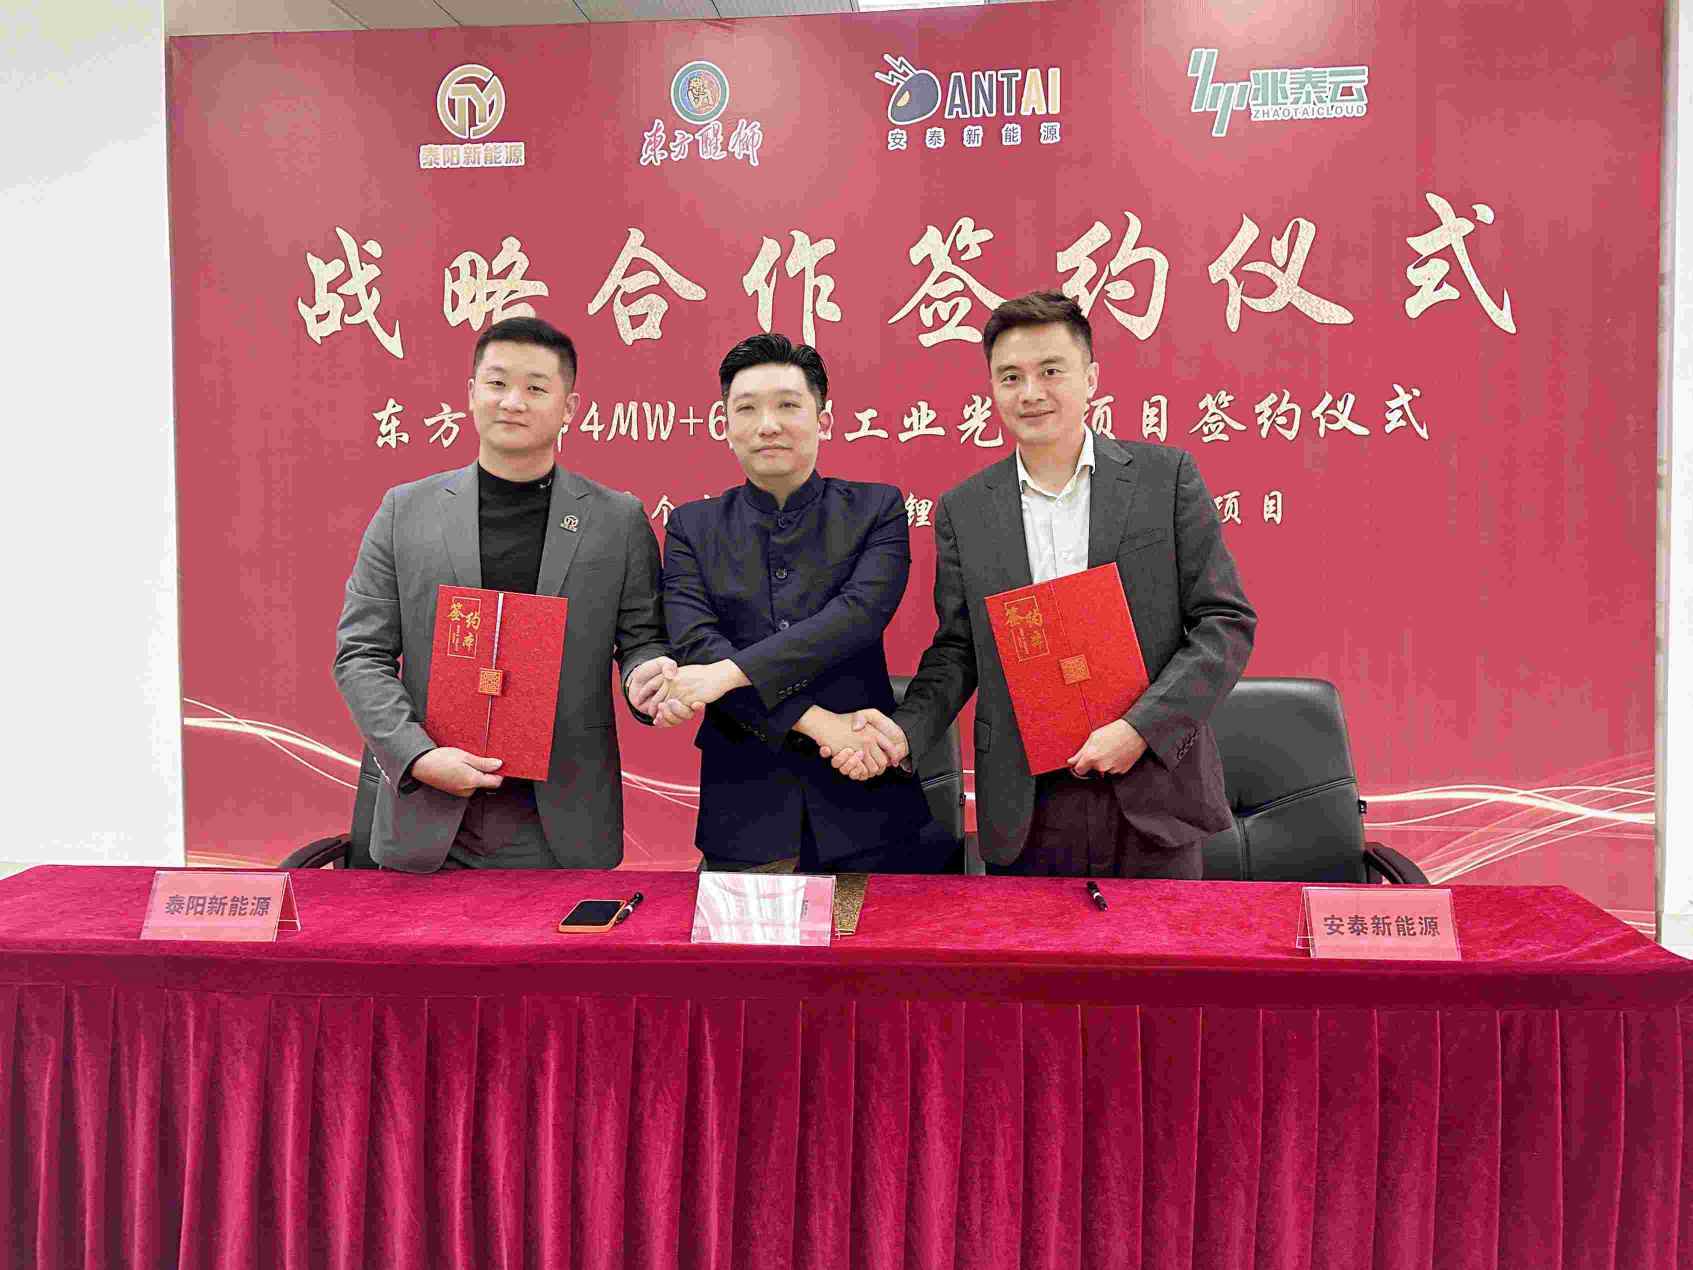 4MW+6MWH，福建省首个工业光储一体项目签约仪式圆满举行！